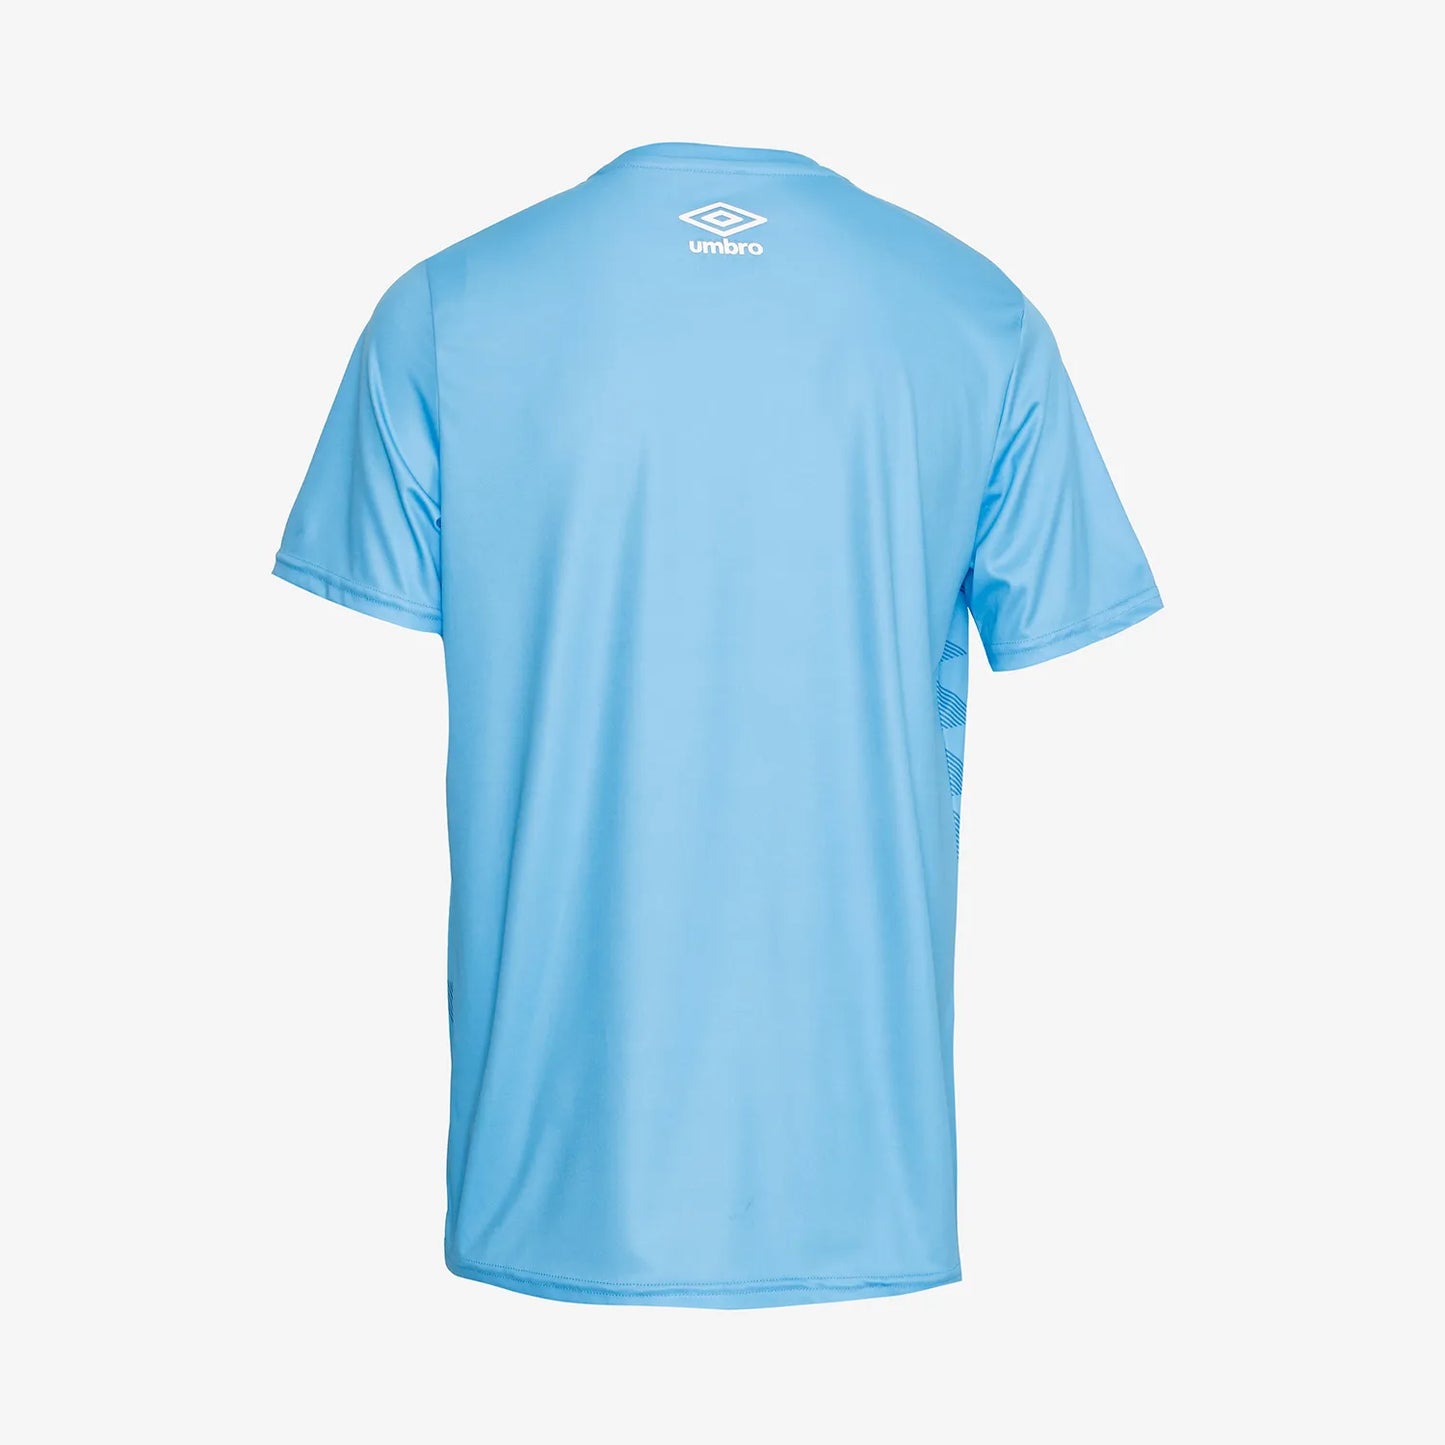 Camiseta PERSONALIZABLE Unisex - Diagonal